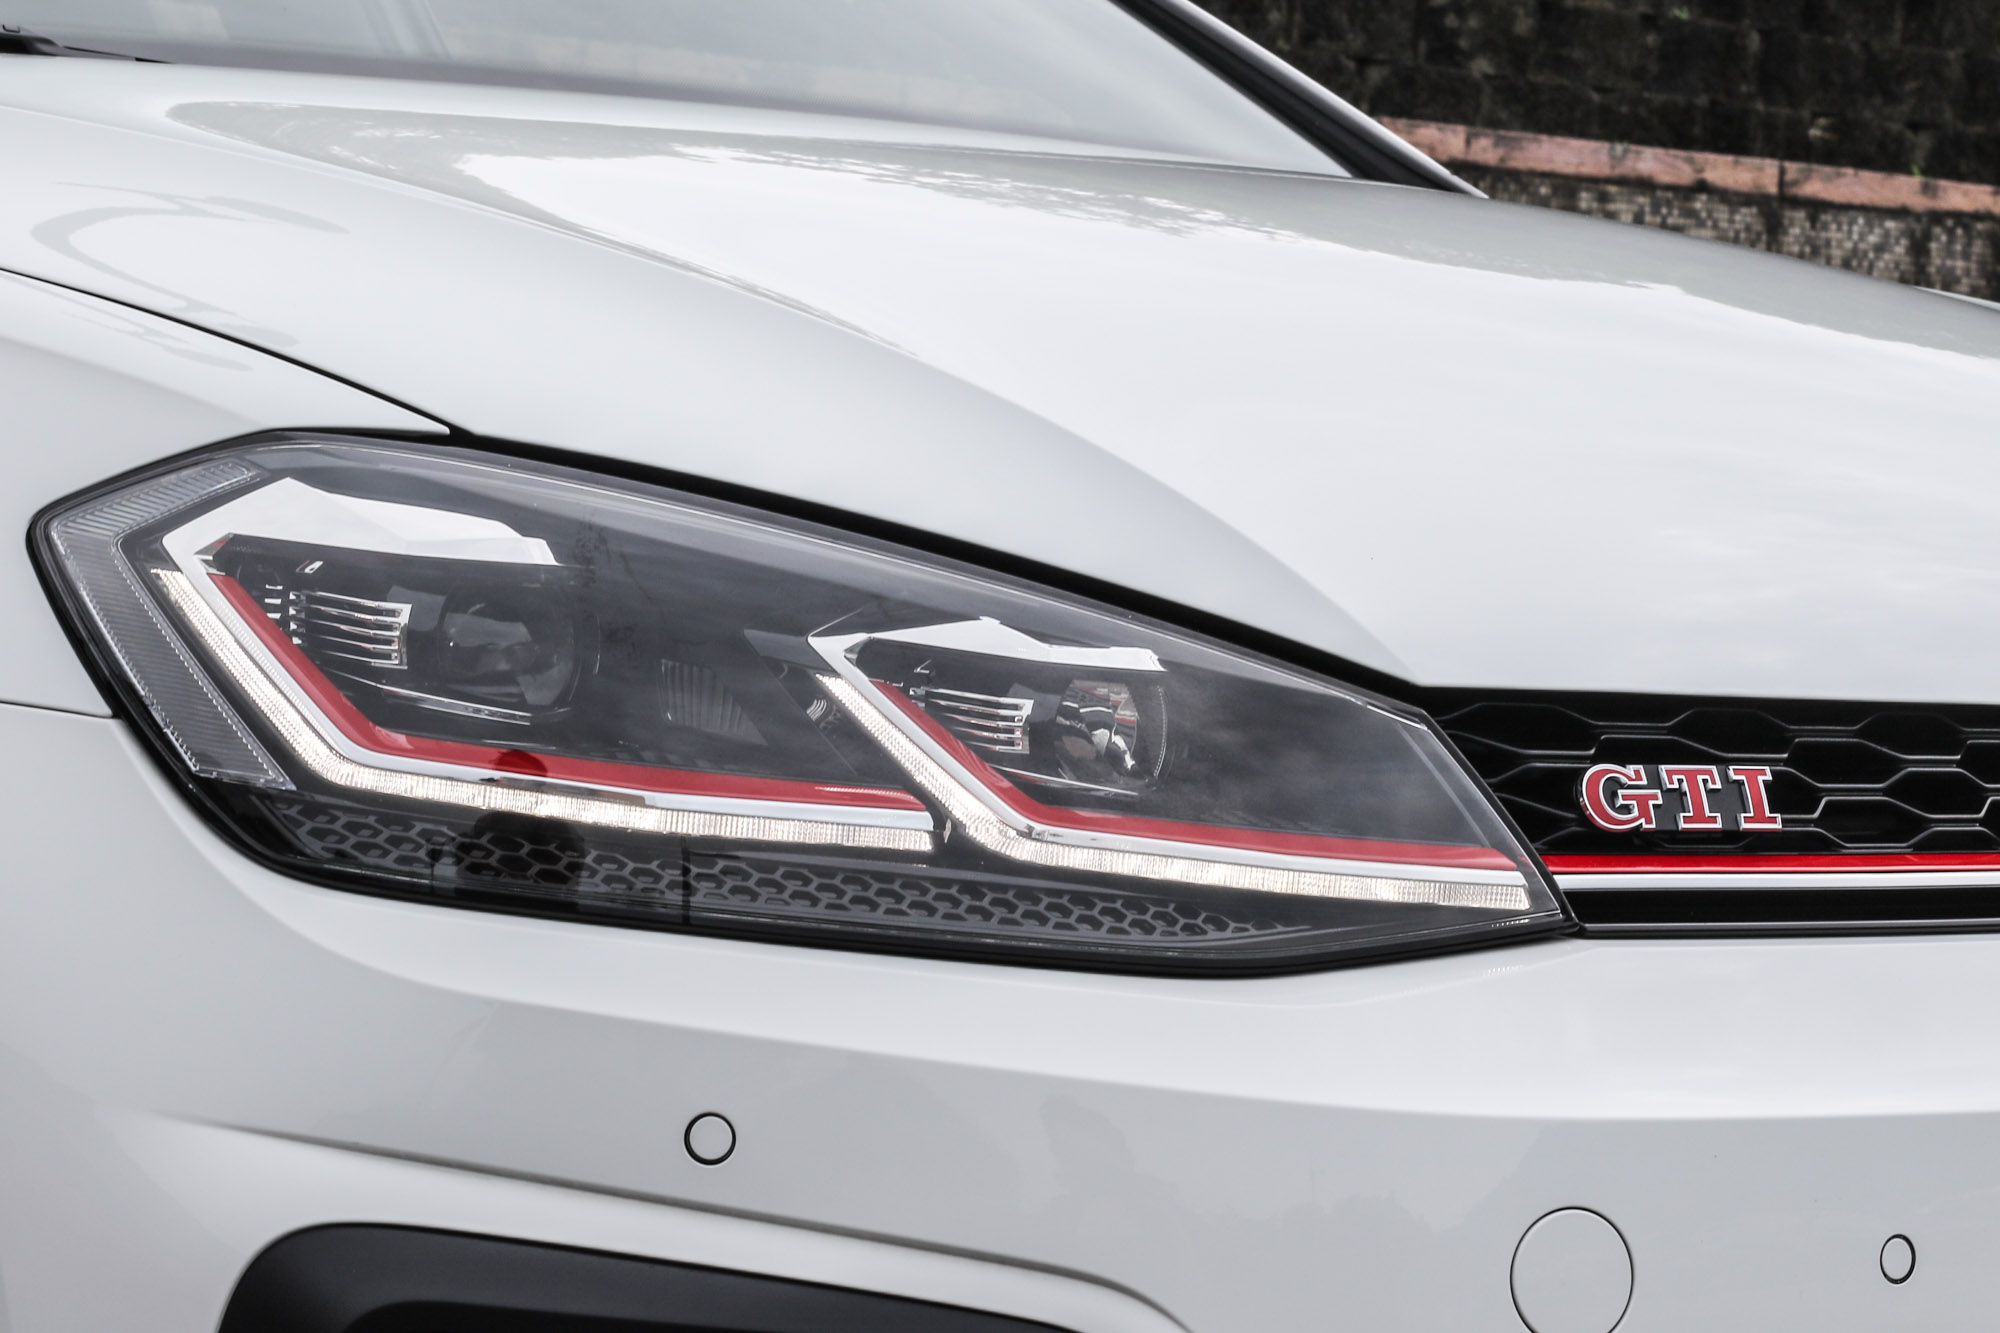 連貫頭燈與水箱護罩的紅色飾條強調性能本質，頭尾與車側皆有 GTI 字樣。